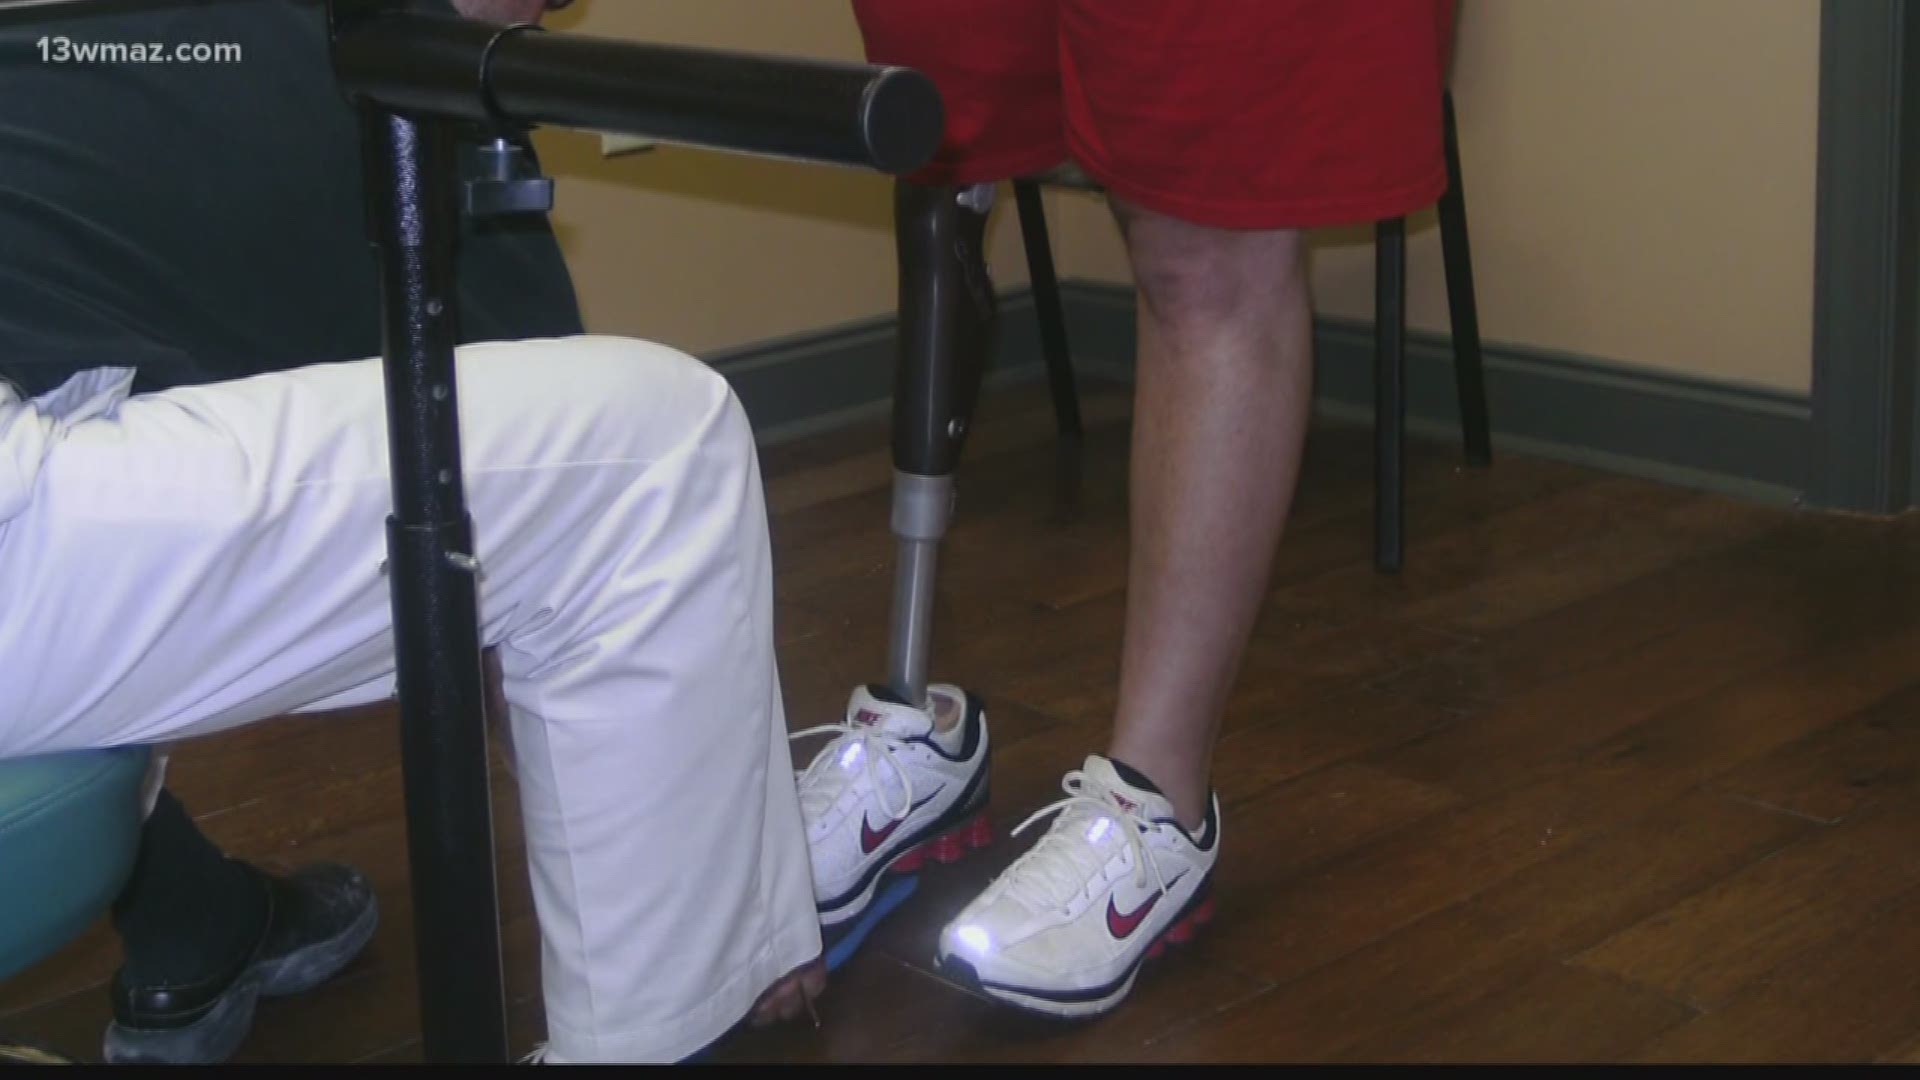 Georgia Tech prosthetic program in danger